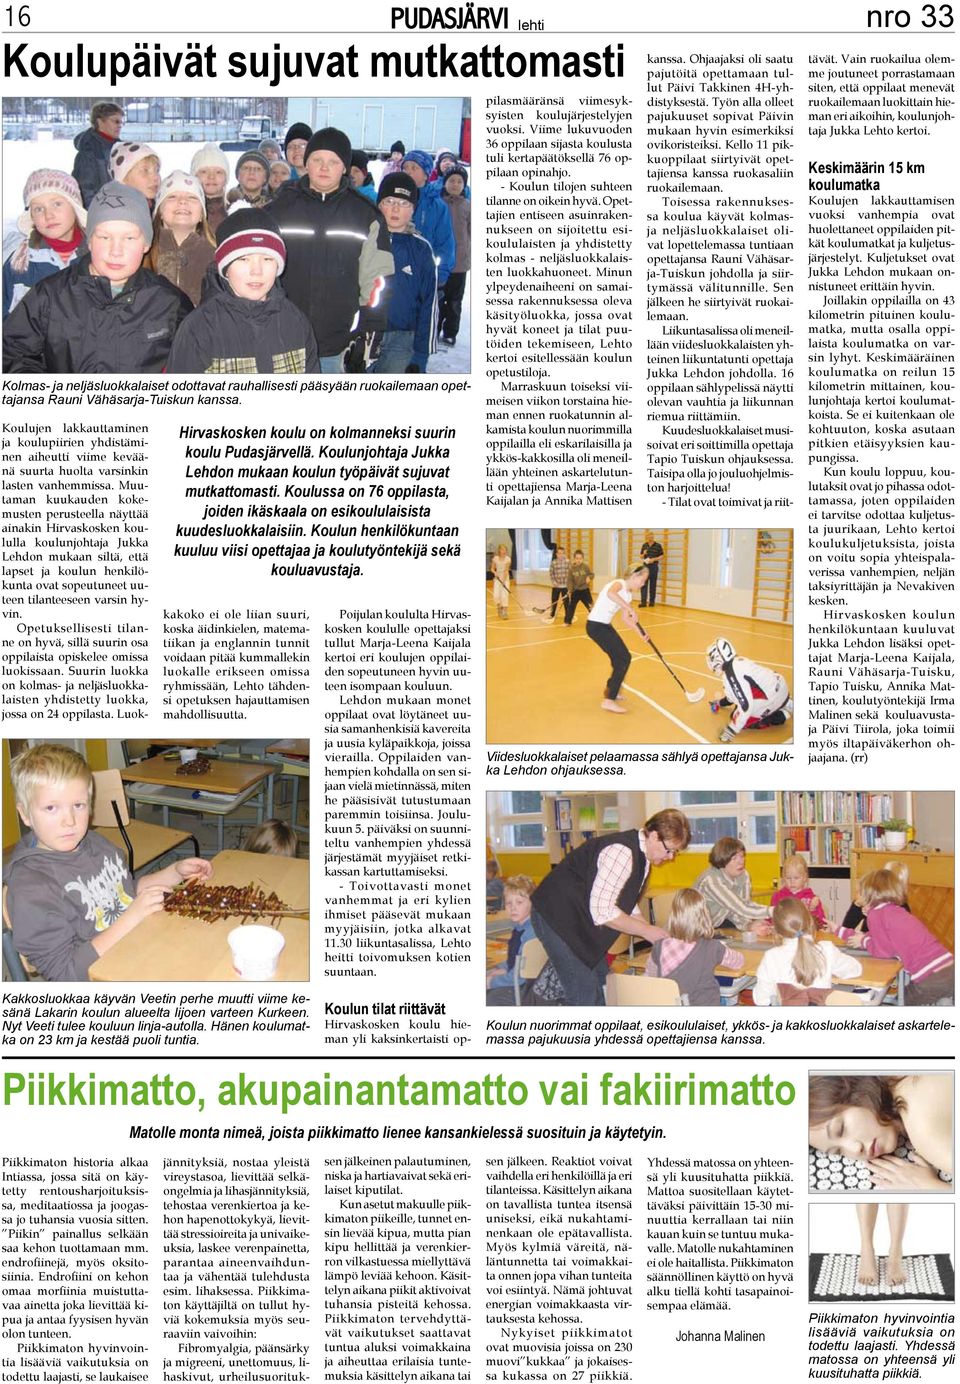 Muutaman kuukauden kokemusten perusteella näyttää ainakin Hirvaskosken koululla koulunjohtaja Jukka Lehdon mukaan siltä, että lapset ja koulun henkilökunta ovat sopeutuneet uuteen tilanteeseen varsin